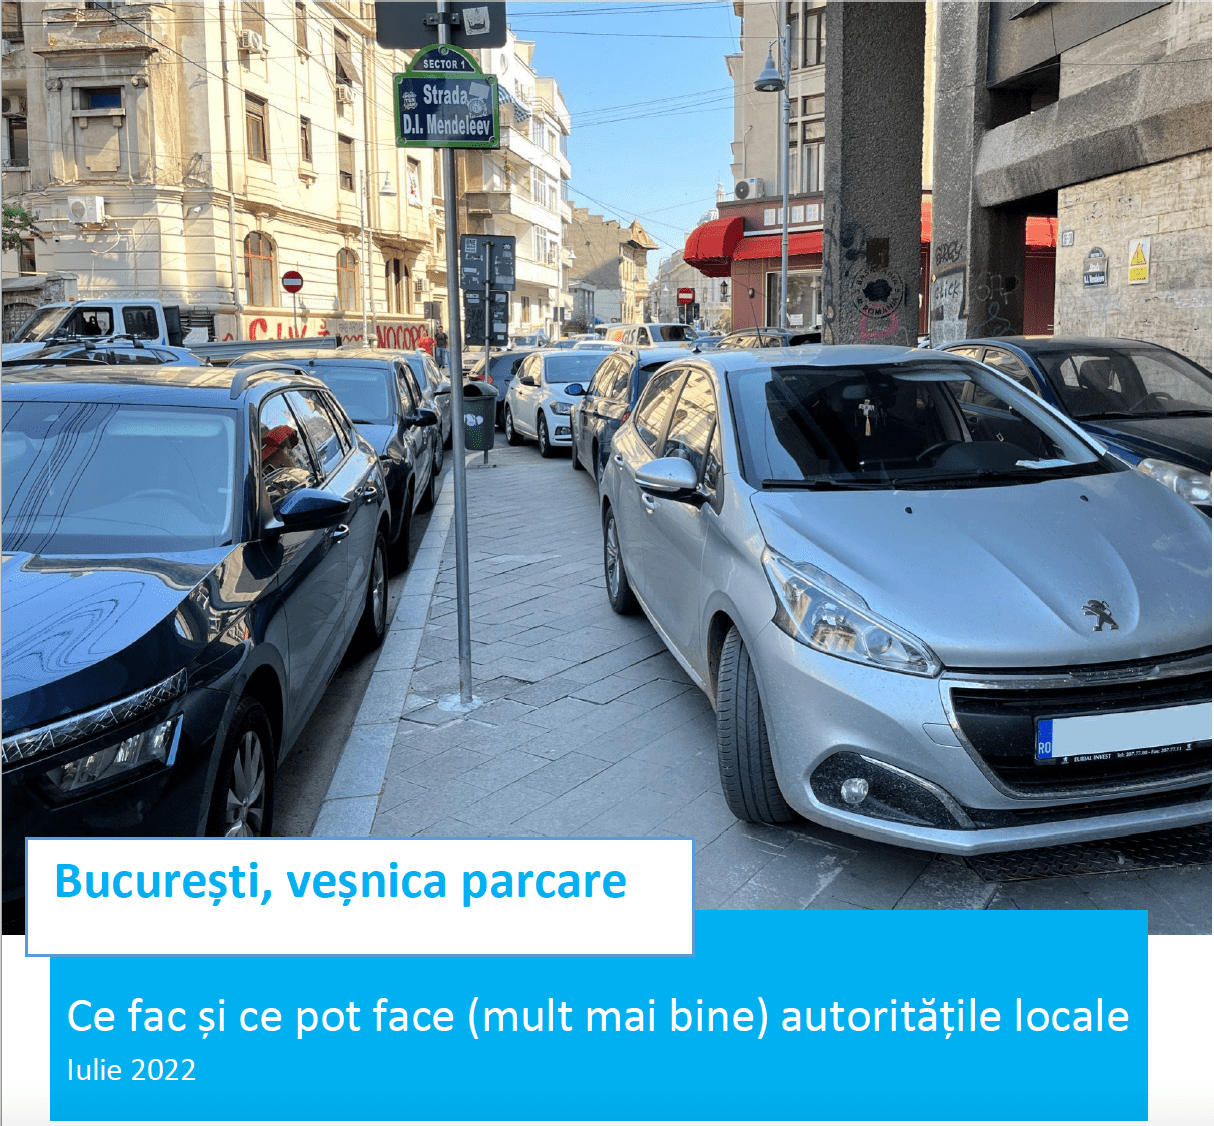 București, veșnica parcare: Ce fac și ce pot face (mult mai bine) autoritățile locale